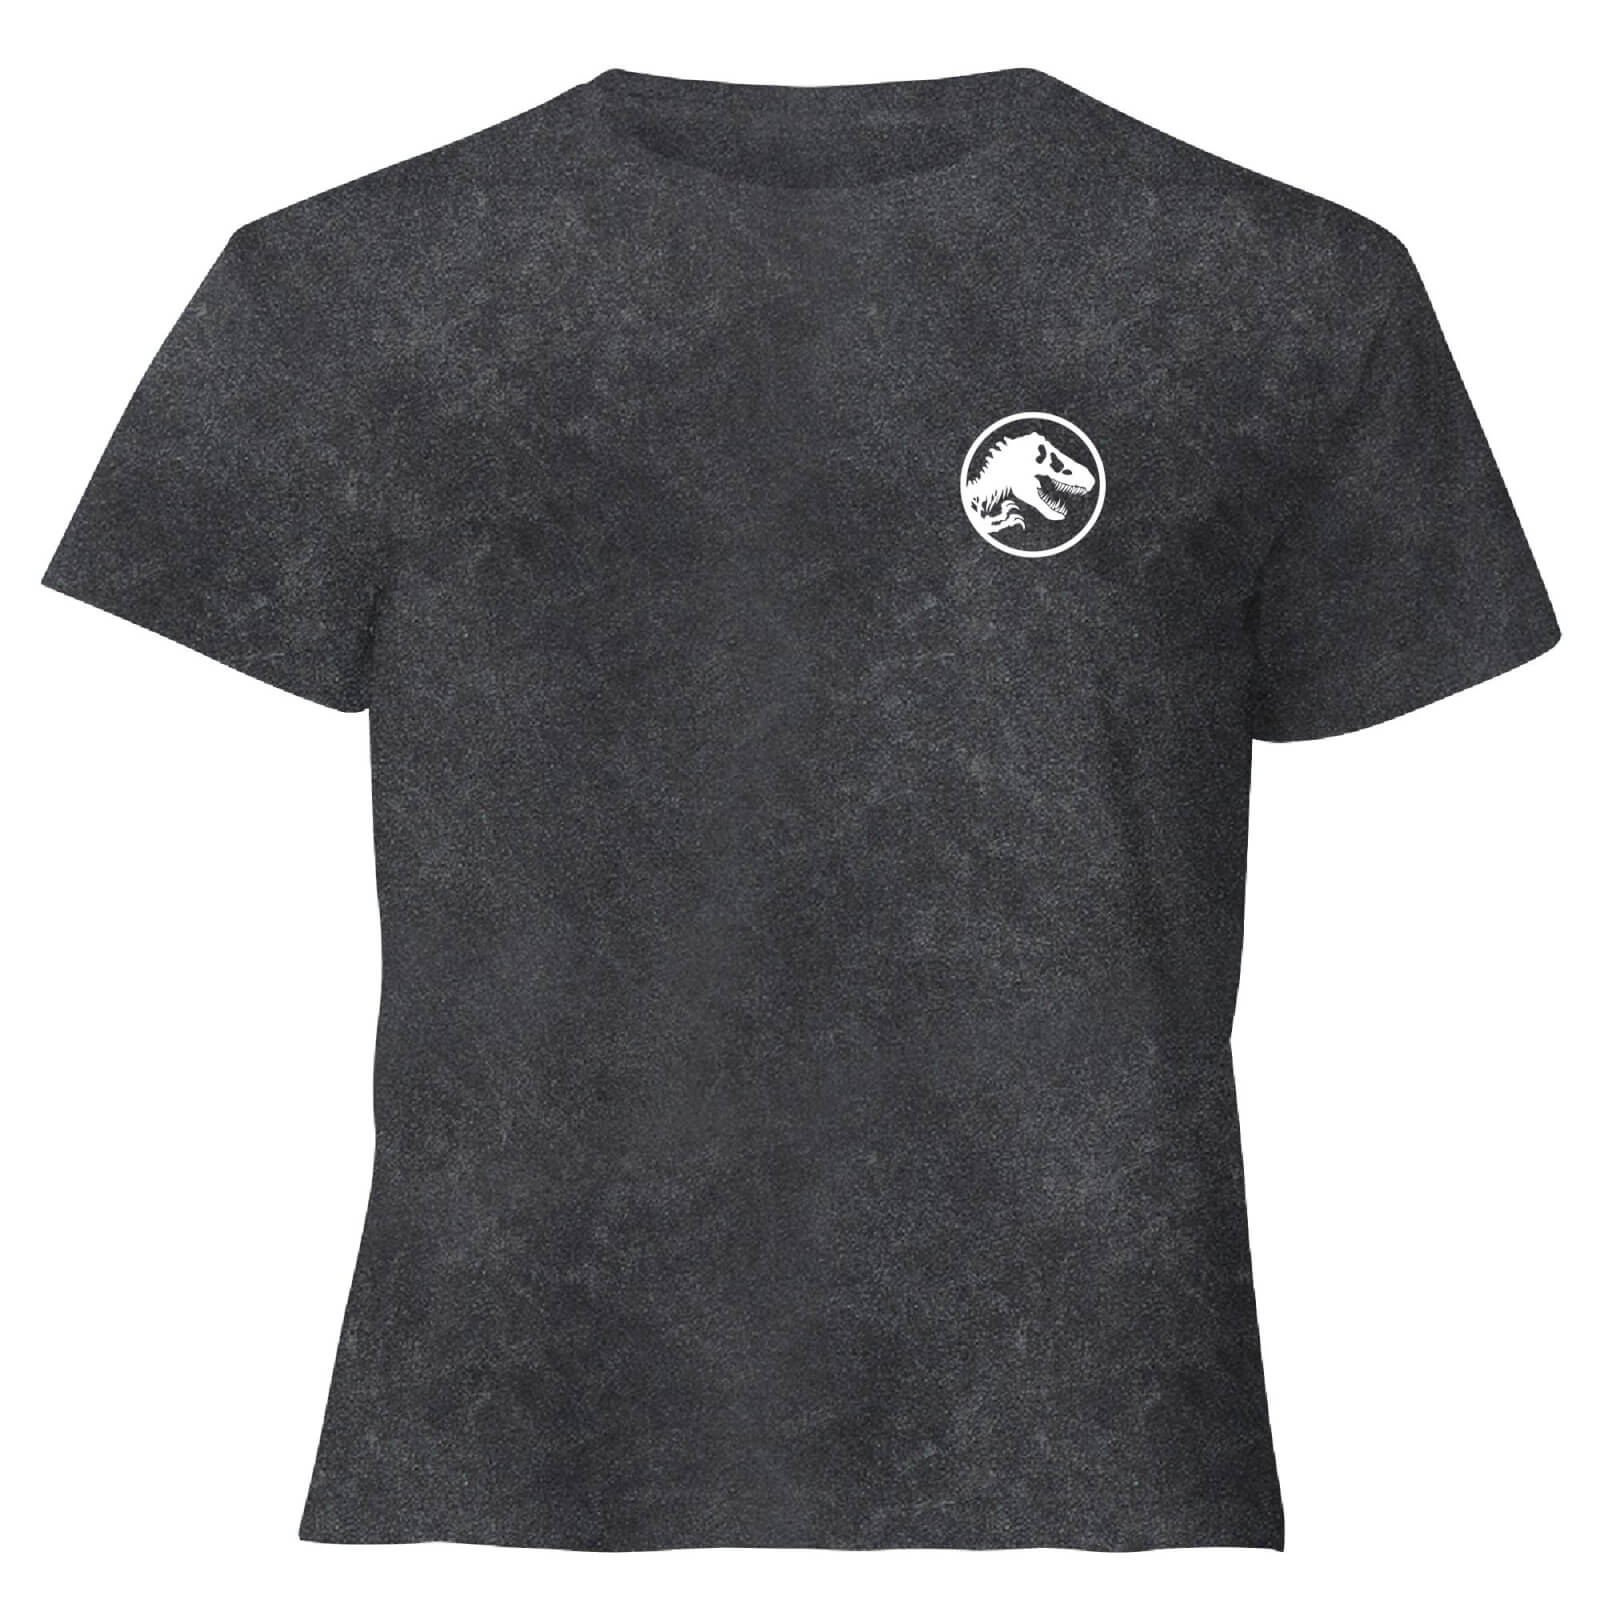 Jurassic Park Primal Limited Variant Ranger Logo - Women's Cropped T-Shirt - Black Acid Wash - XS - Black Acid Wash